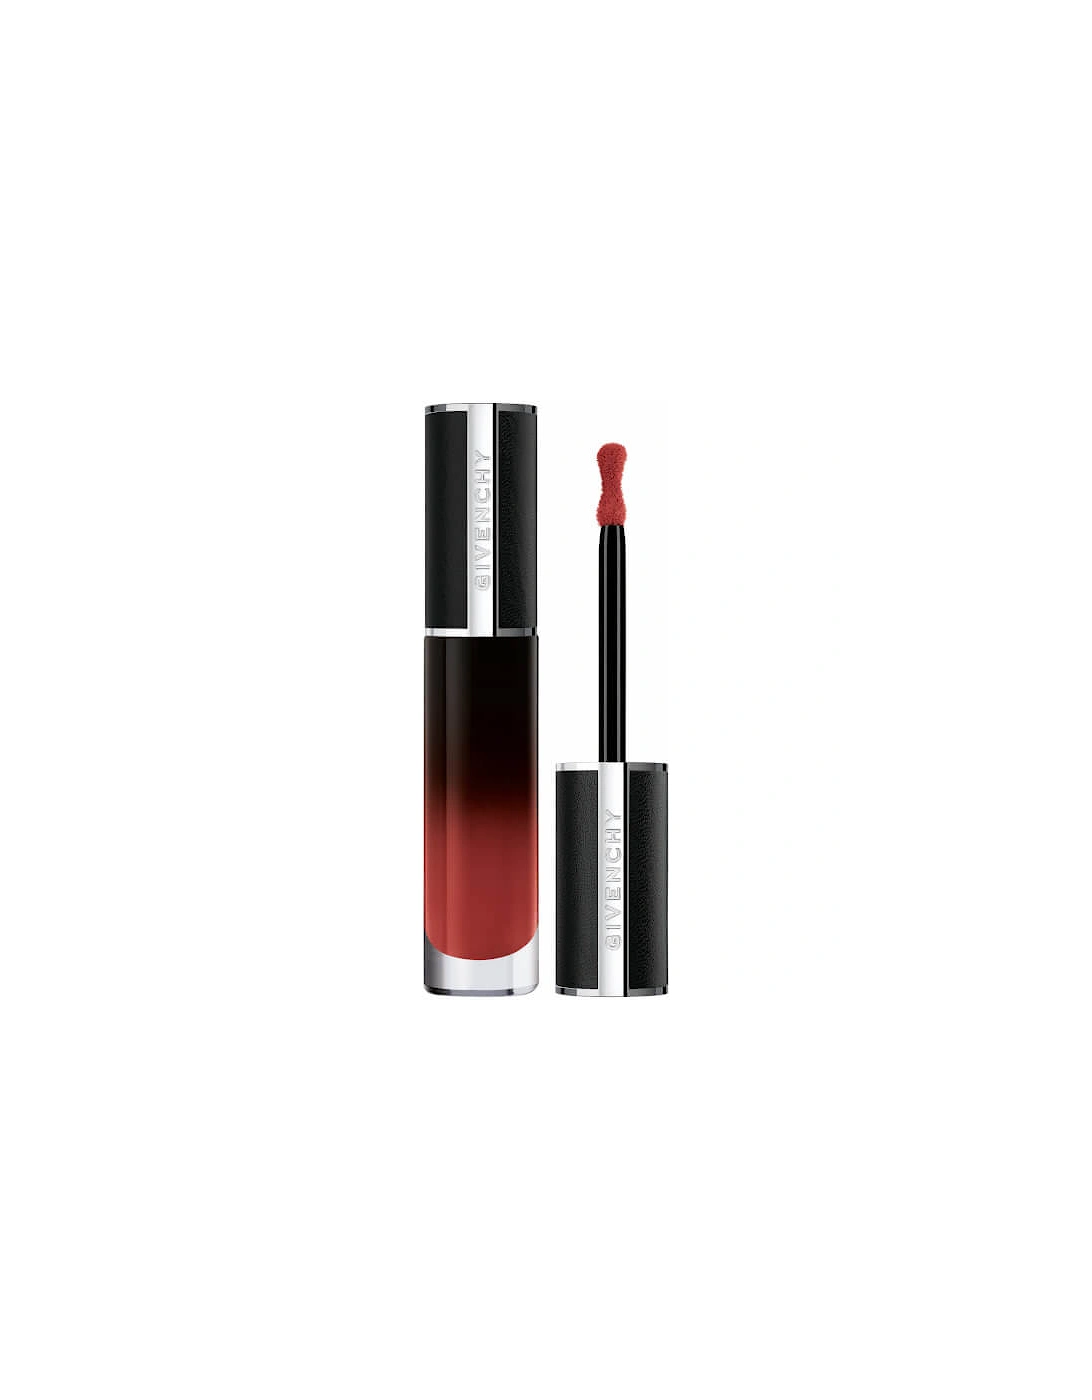 Le Rouge Interdit Cream Velvet Lipstick - N41 Brun Erable, 2 of 1